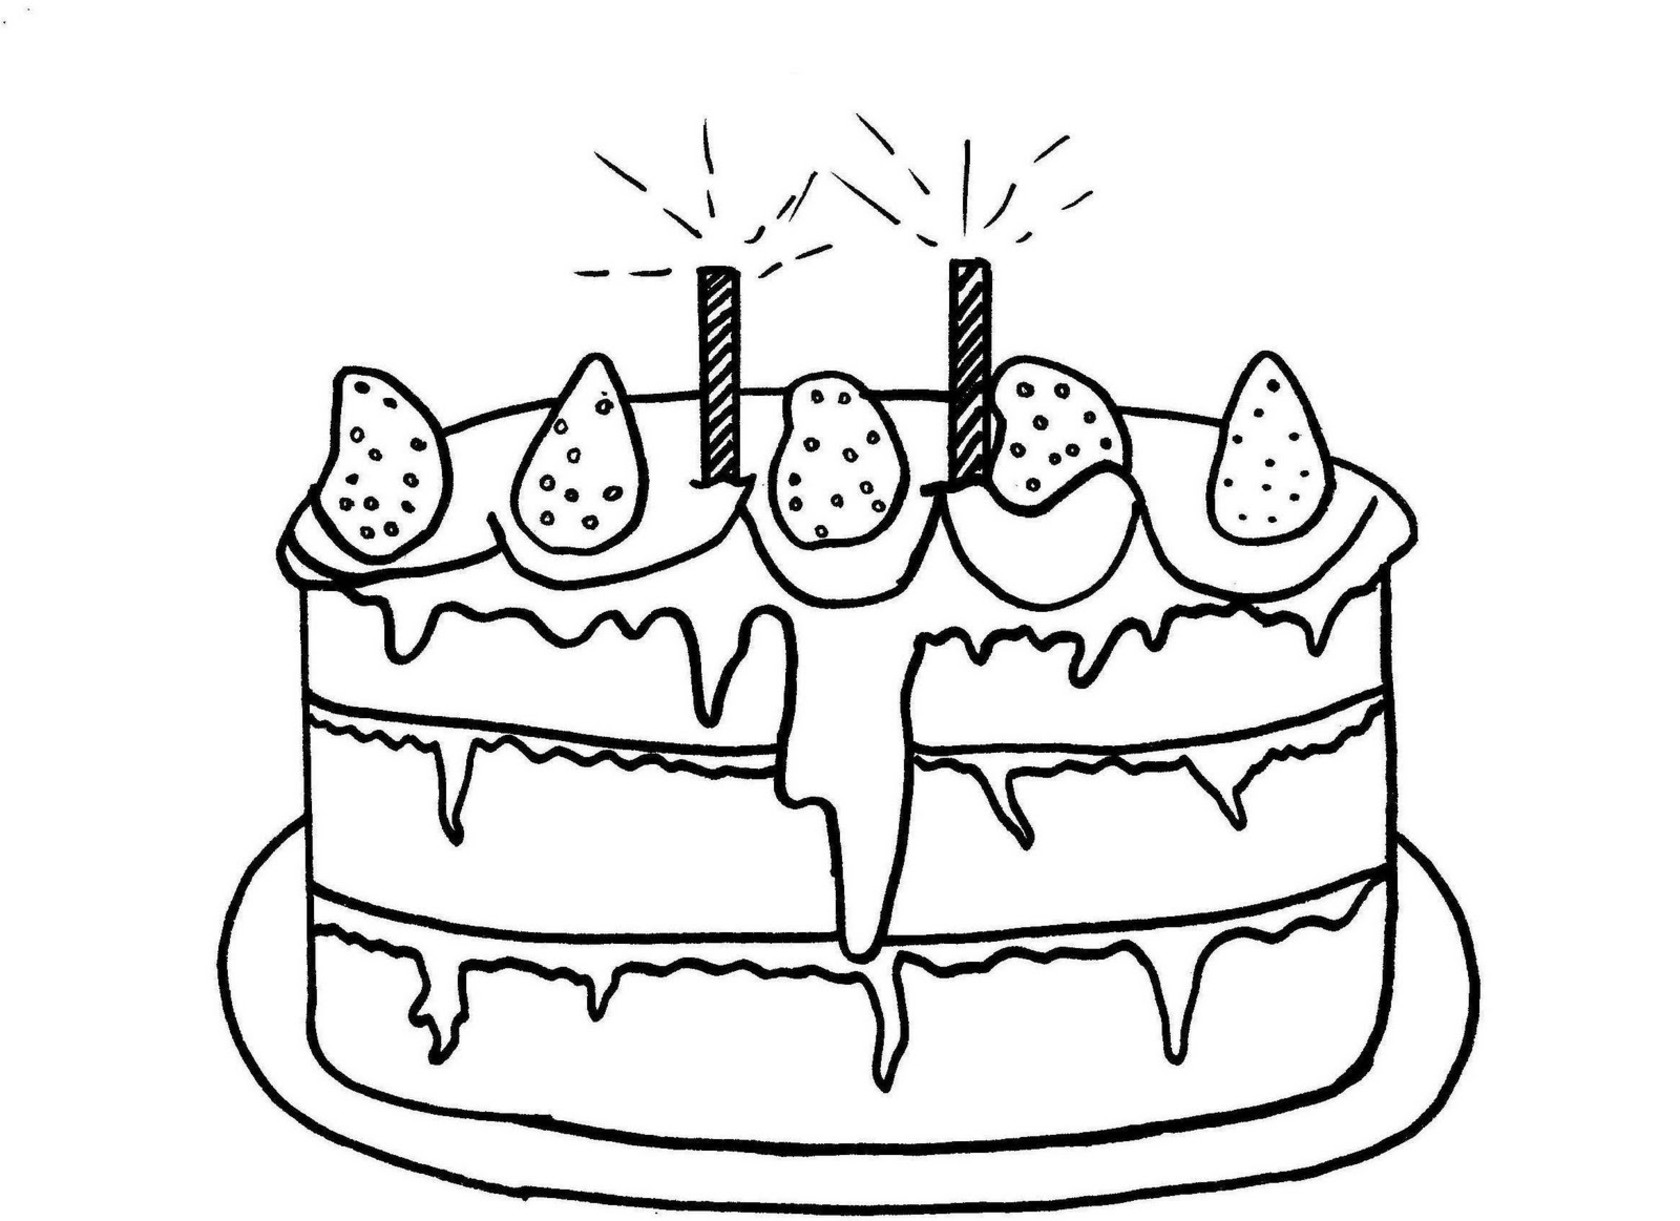 Распечатать картинку на торт. Раскраска торт. Торт раскраска для детей. Раскраска для малышей тортик. Раскраска торты и пирожные.